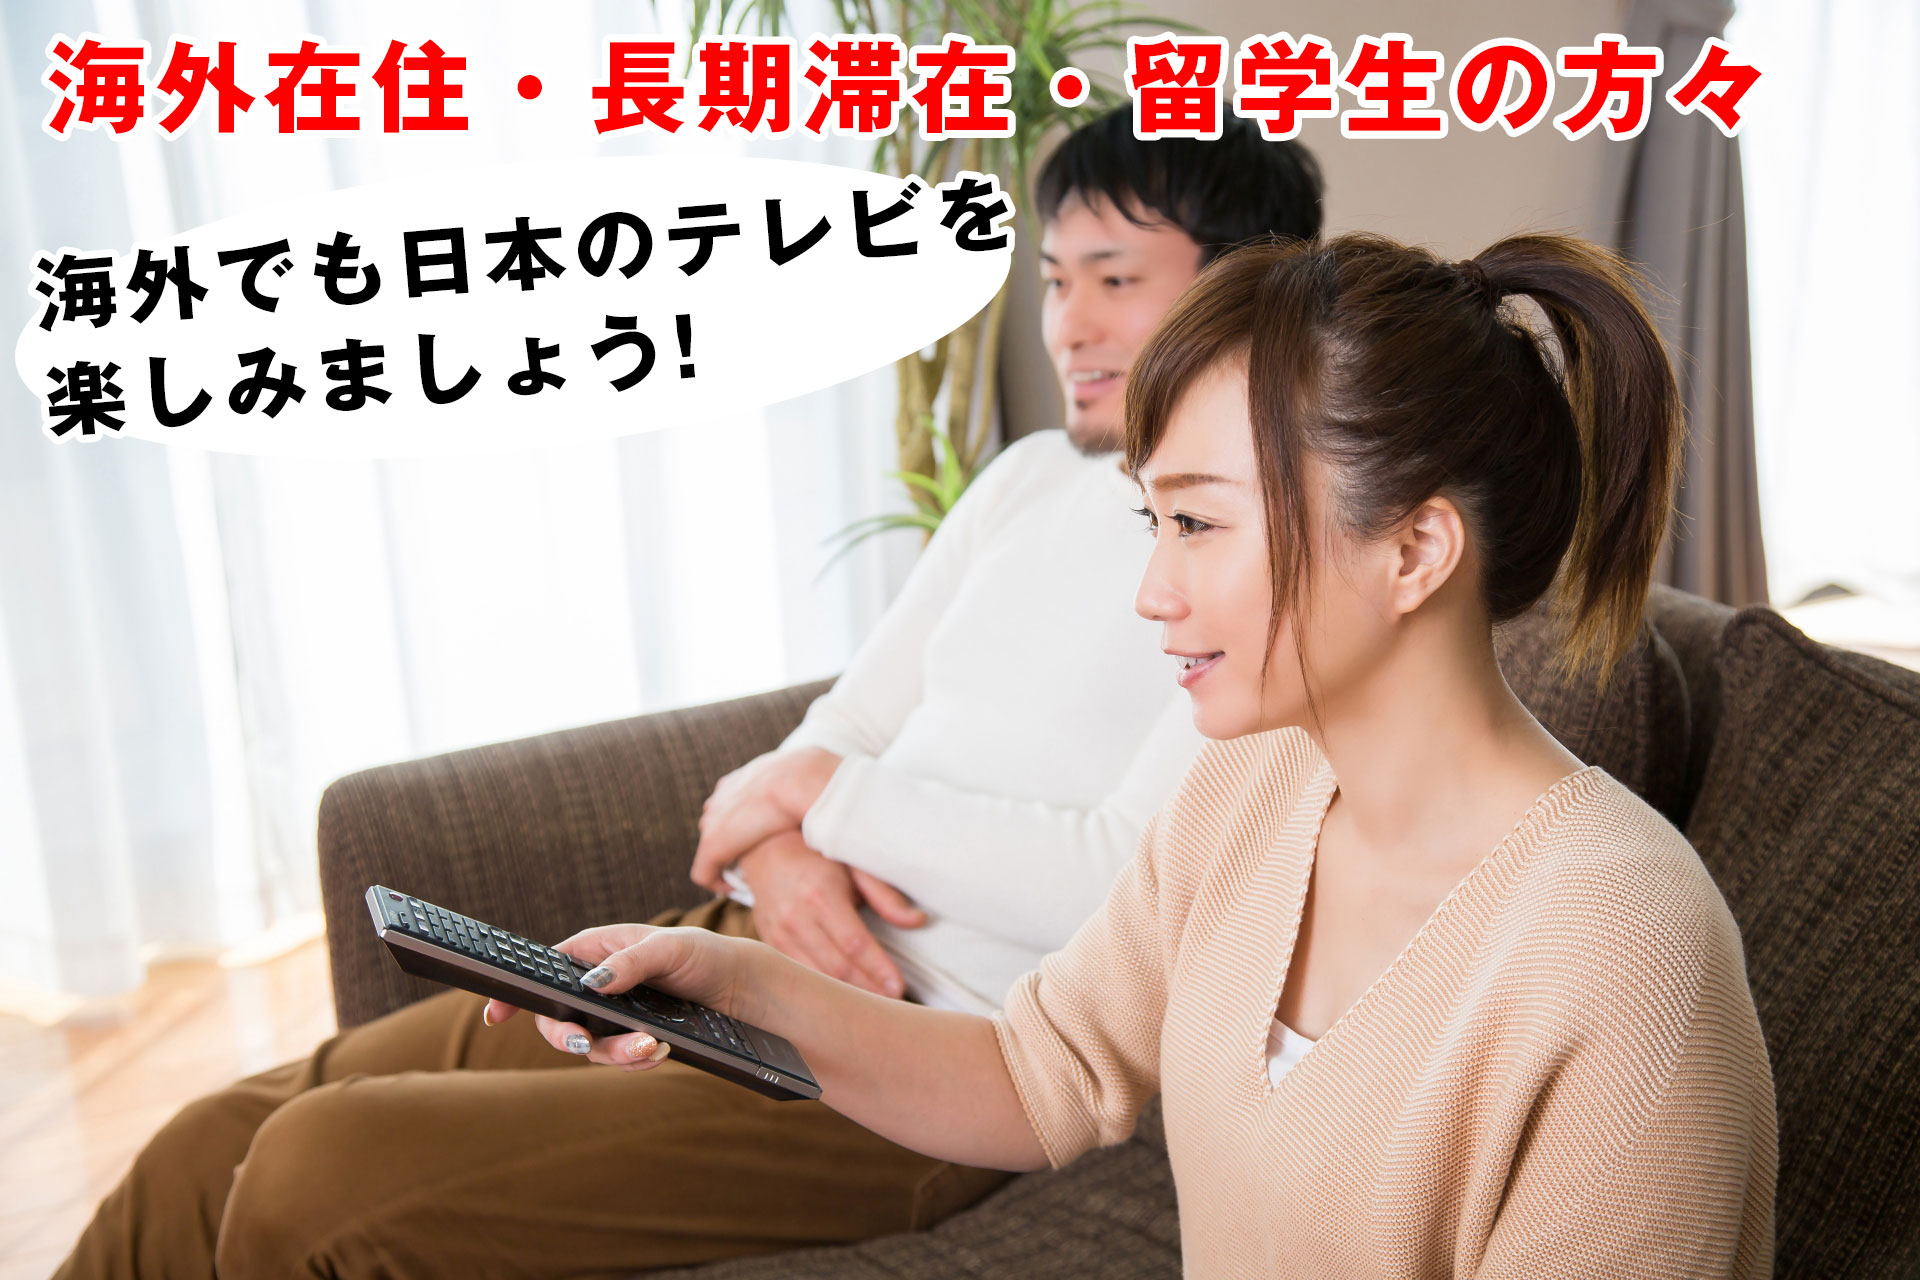 海外在住・長期滞在・留学生の方々 海外でも日本のテレビを楽しみましょう